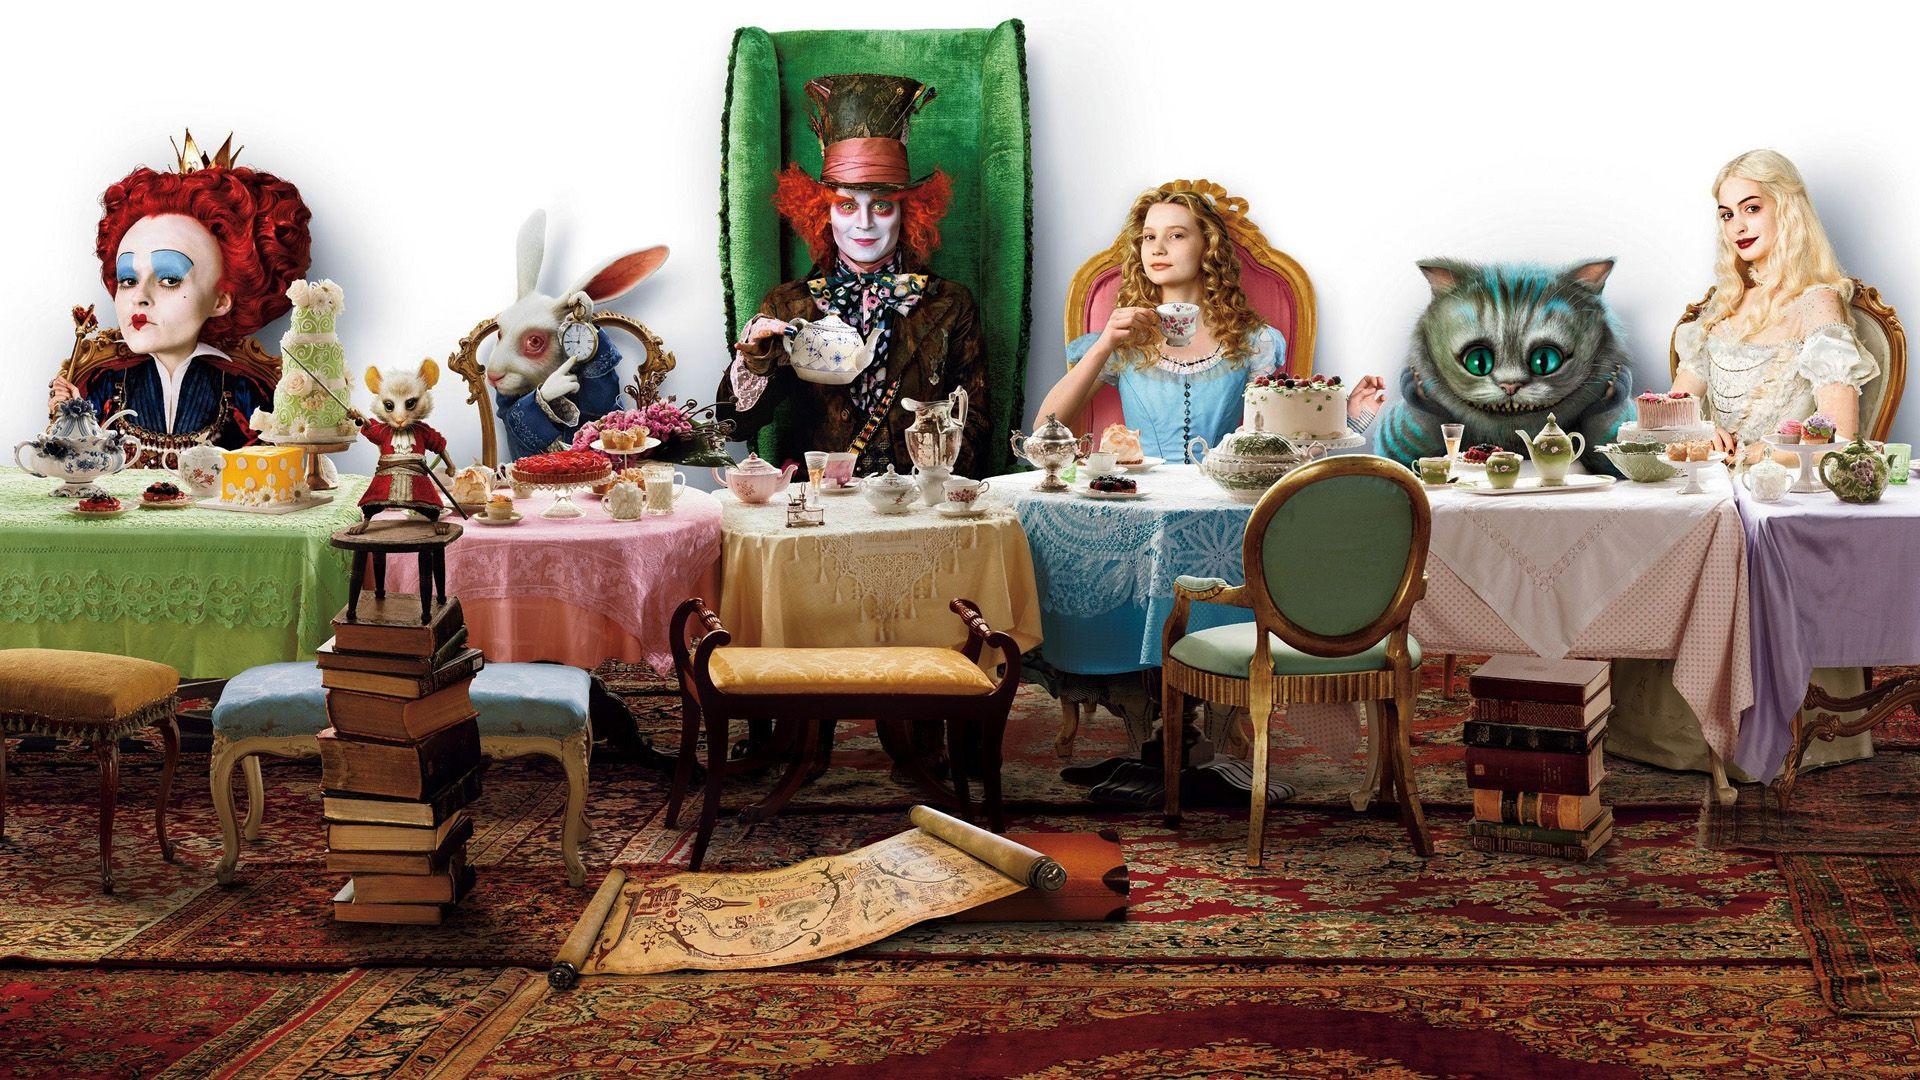 Alice In Wonderland Alice White Rabbit Cheshire Cat Mad Hatter Tweedledee Tweedledum Garoto Guloso Garoto Guloso